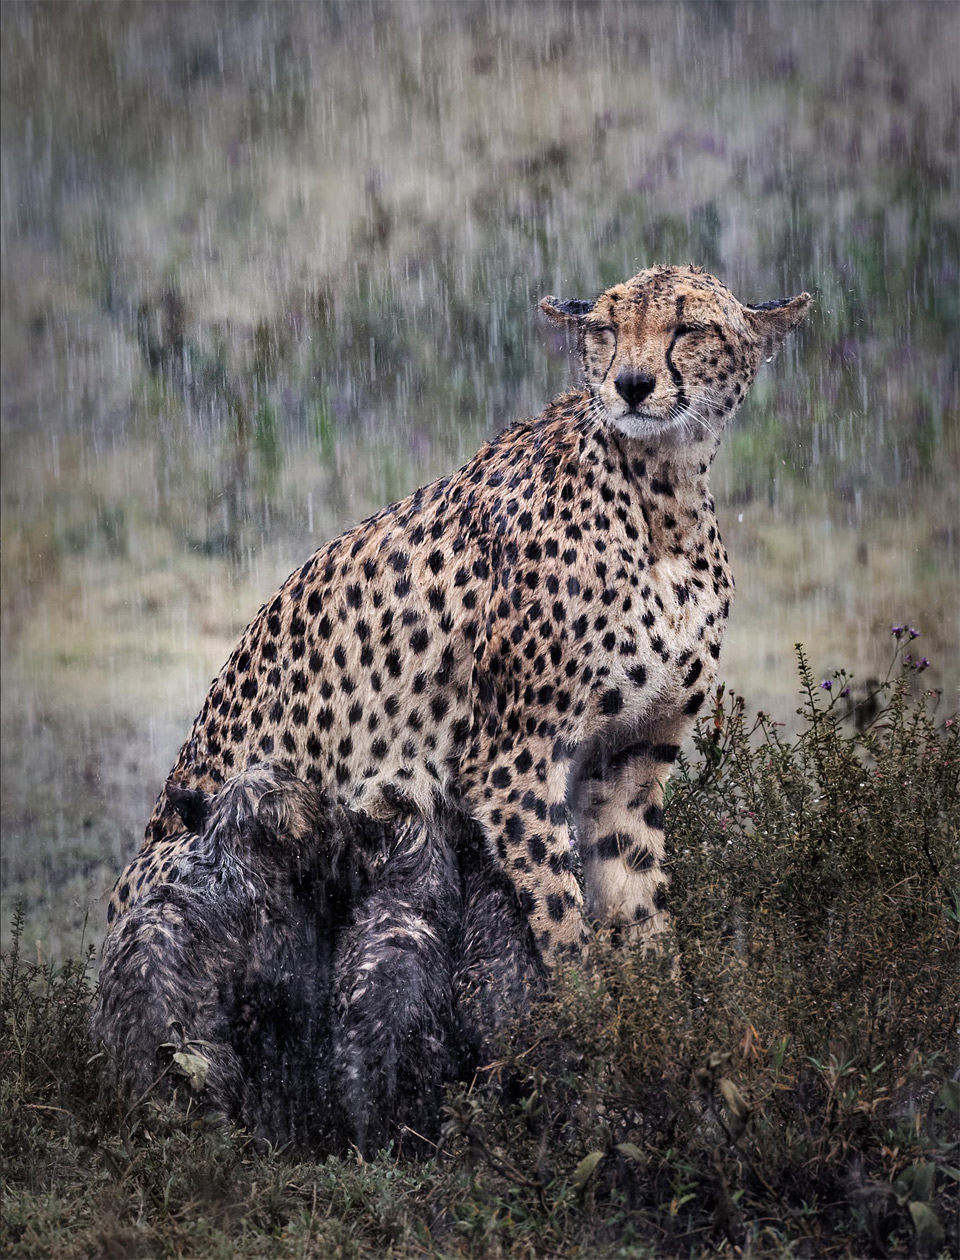 cheetah nursing her cubs in the rain